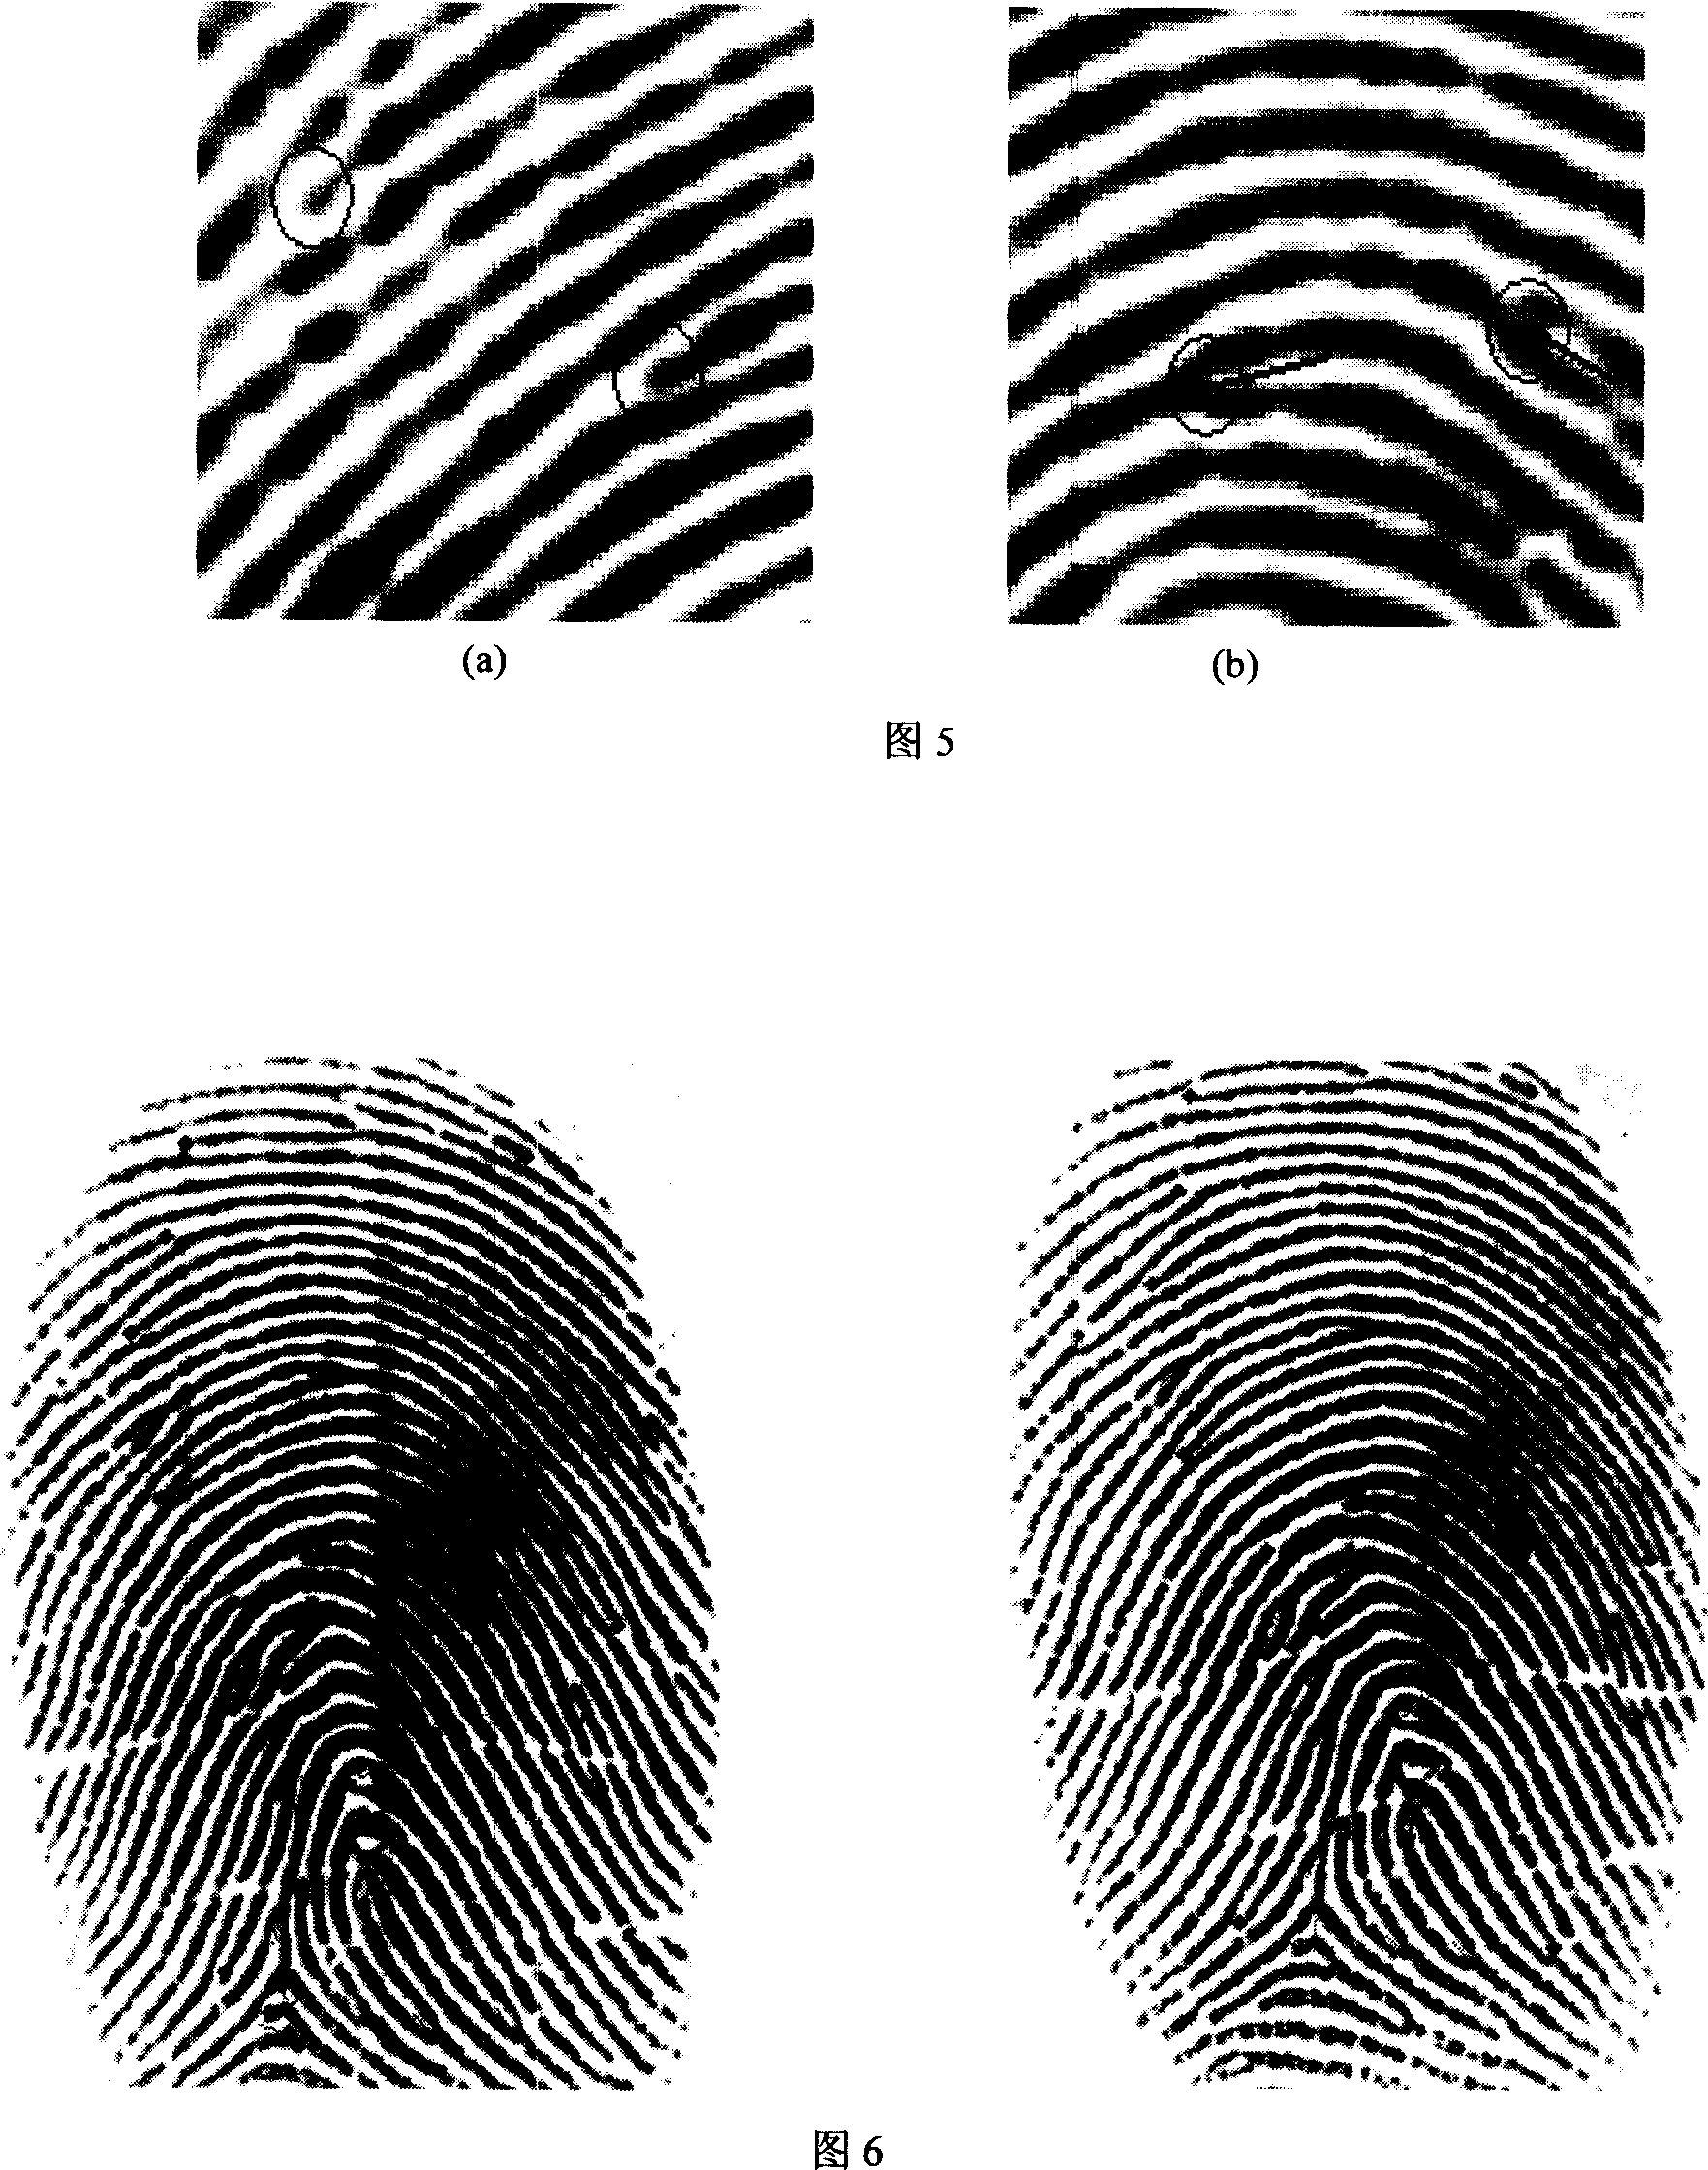 Method for binding/recovering key using fingerprint details